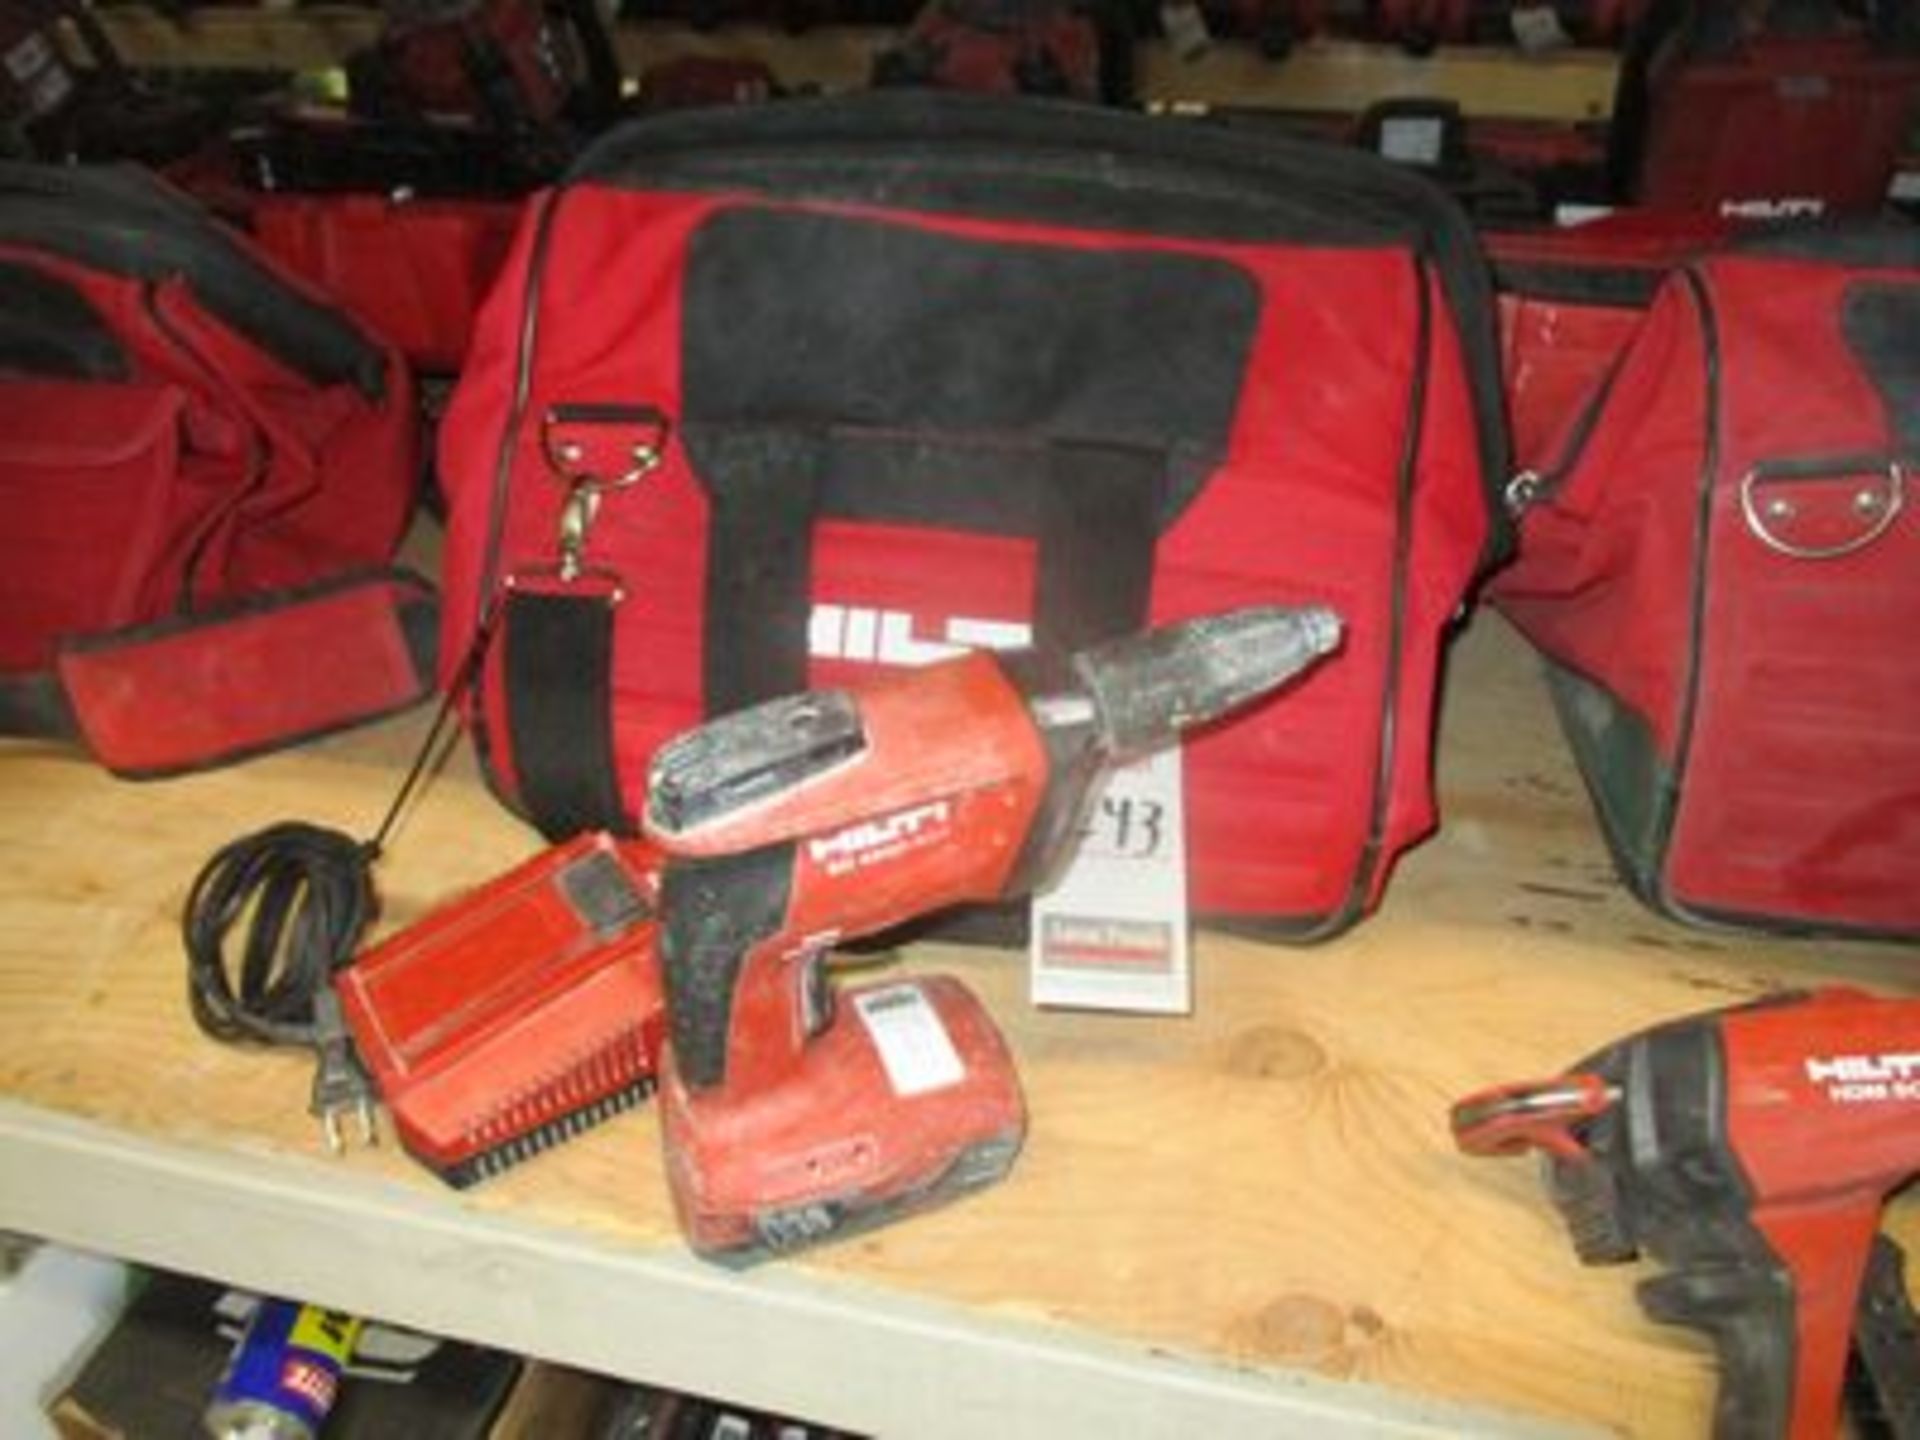 HILTI 5D DRYWALL SCREW GUN, 4500-A22 W/ CHARGER & HILTI BAG